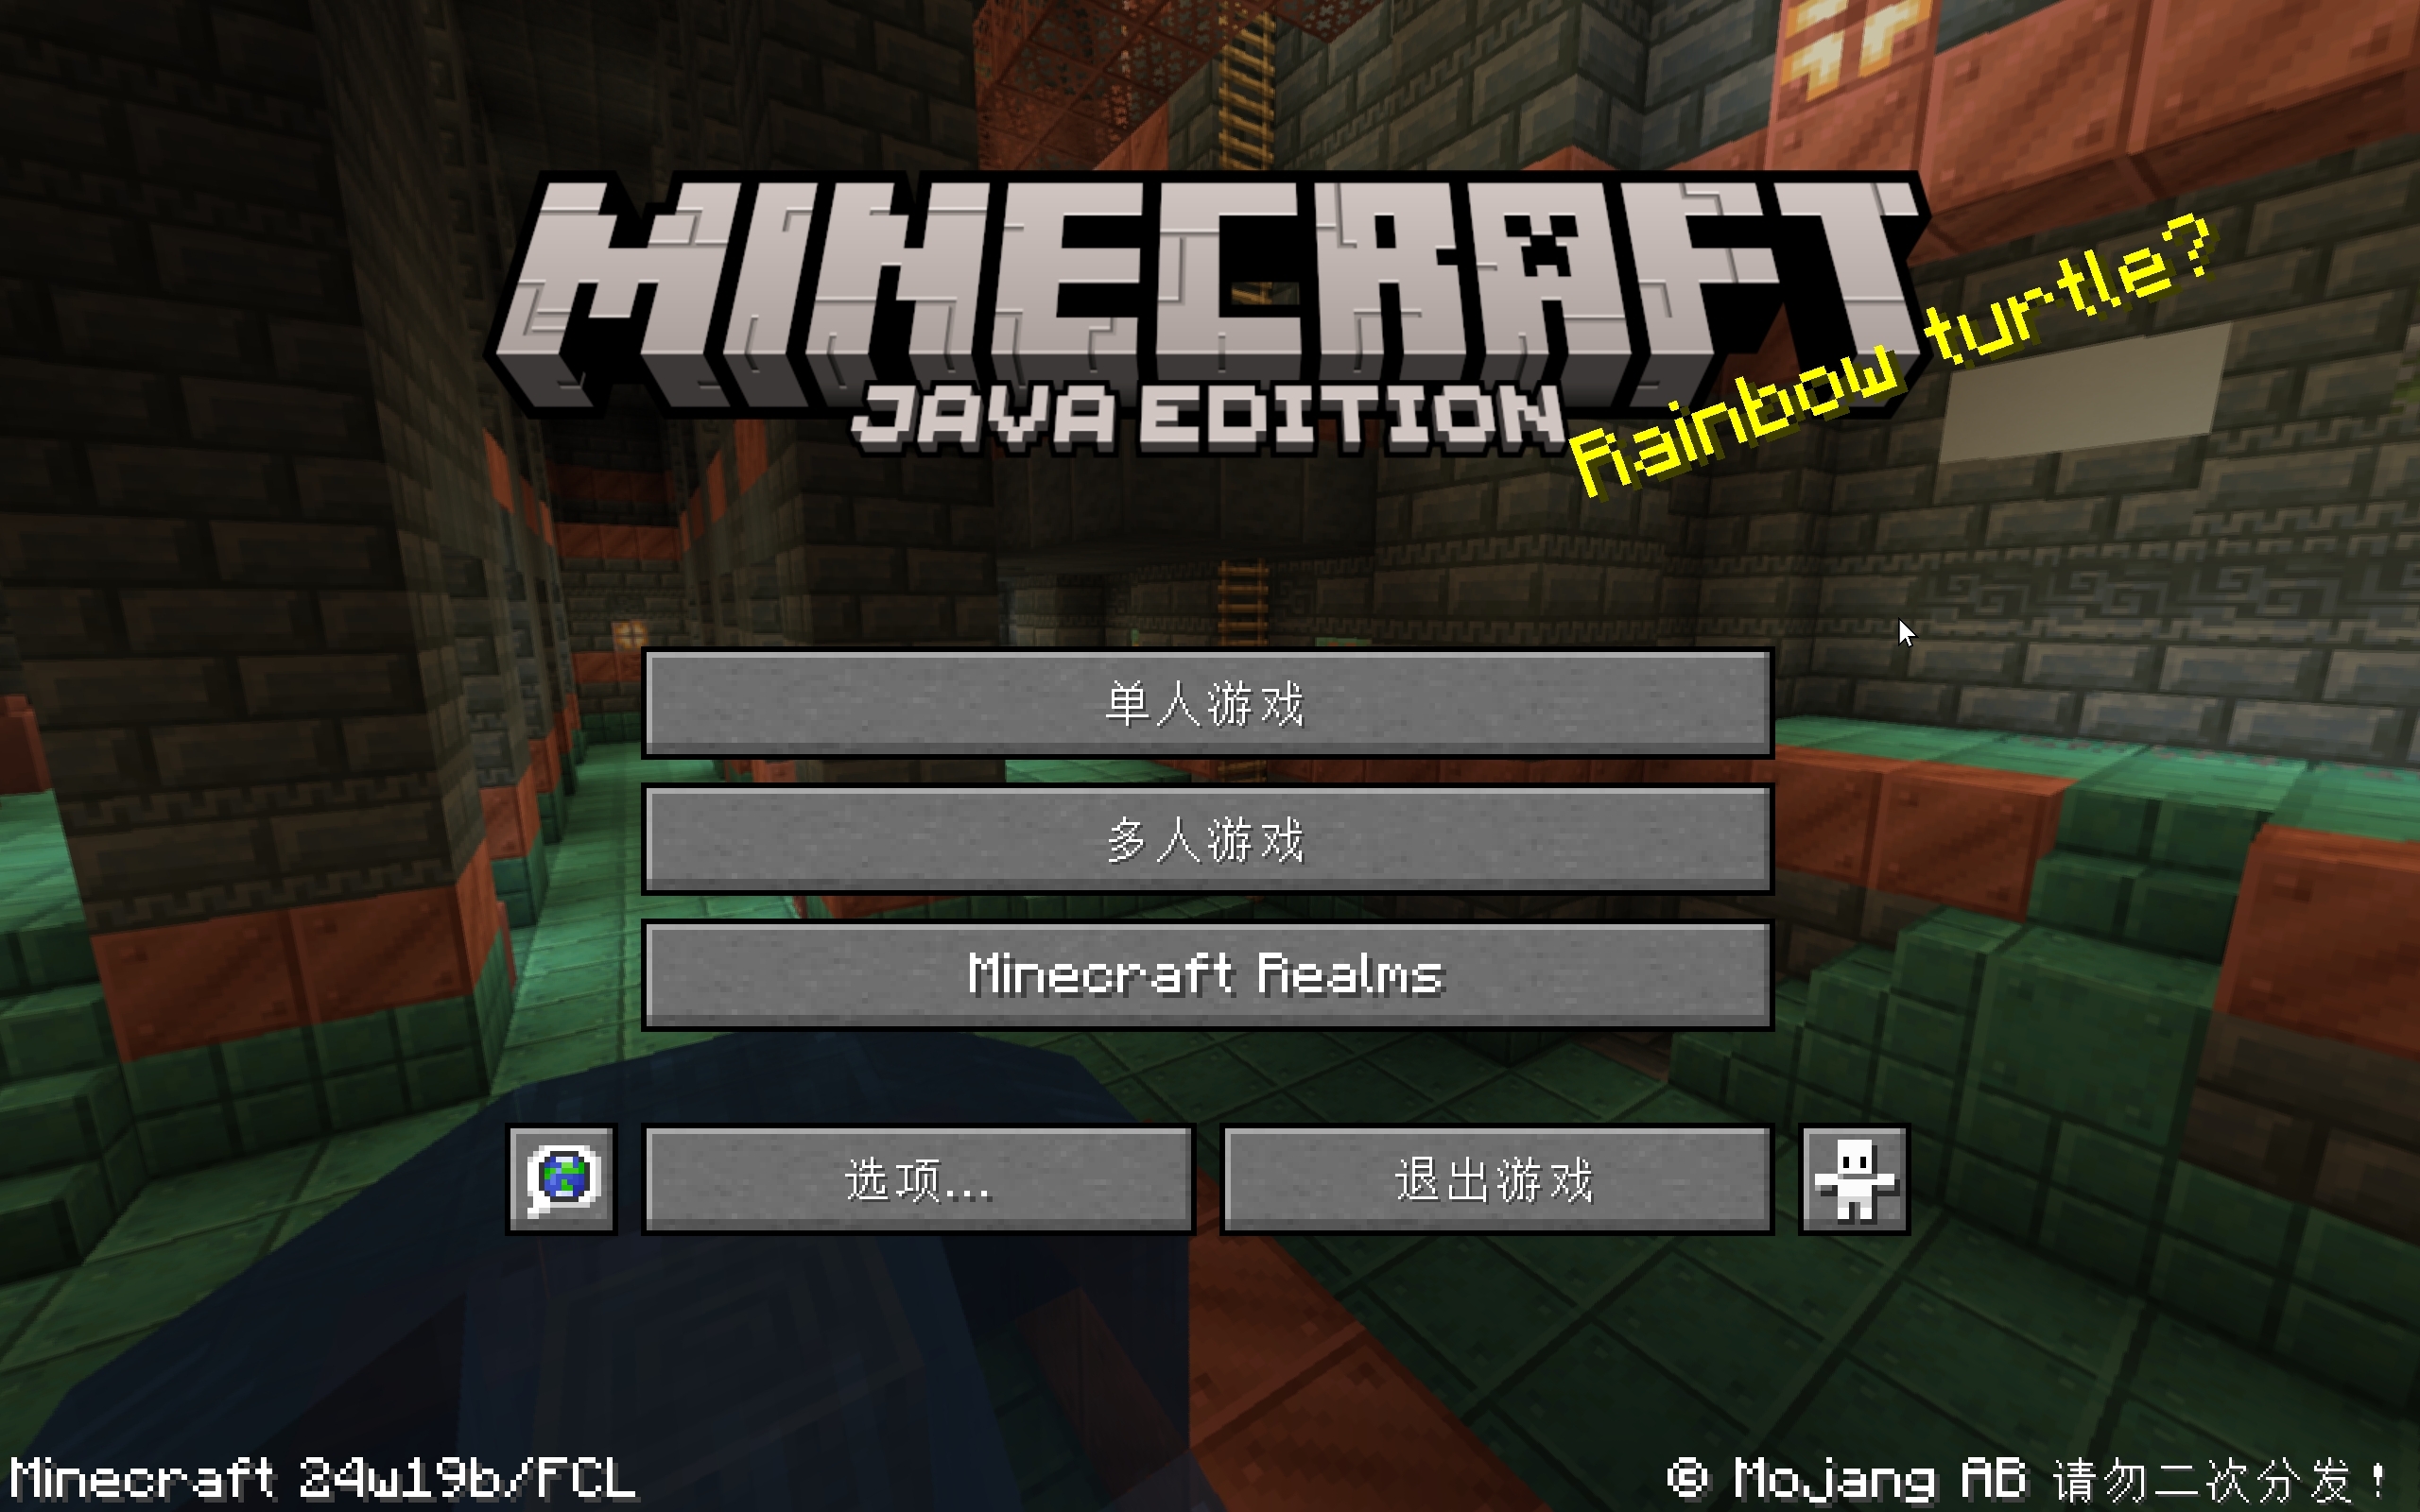 Minecraft我的世界24w19b最新快照发布！